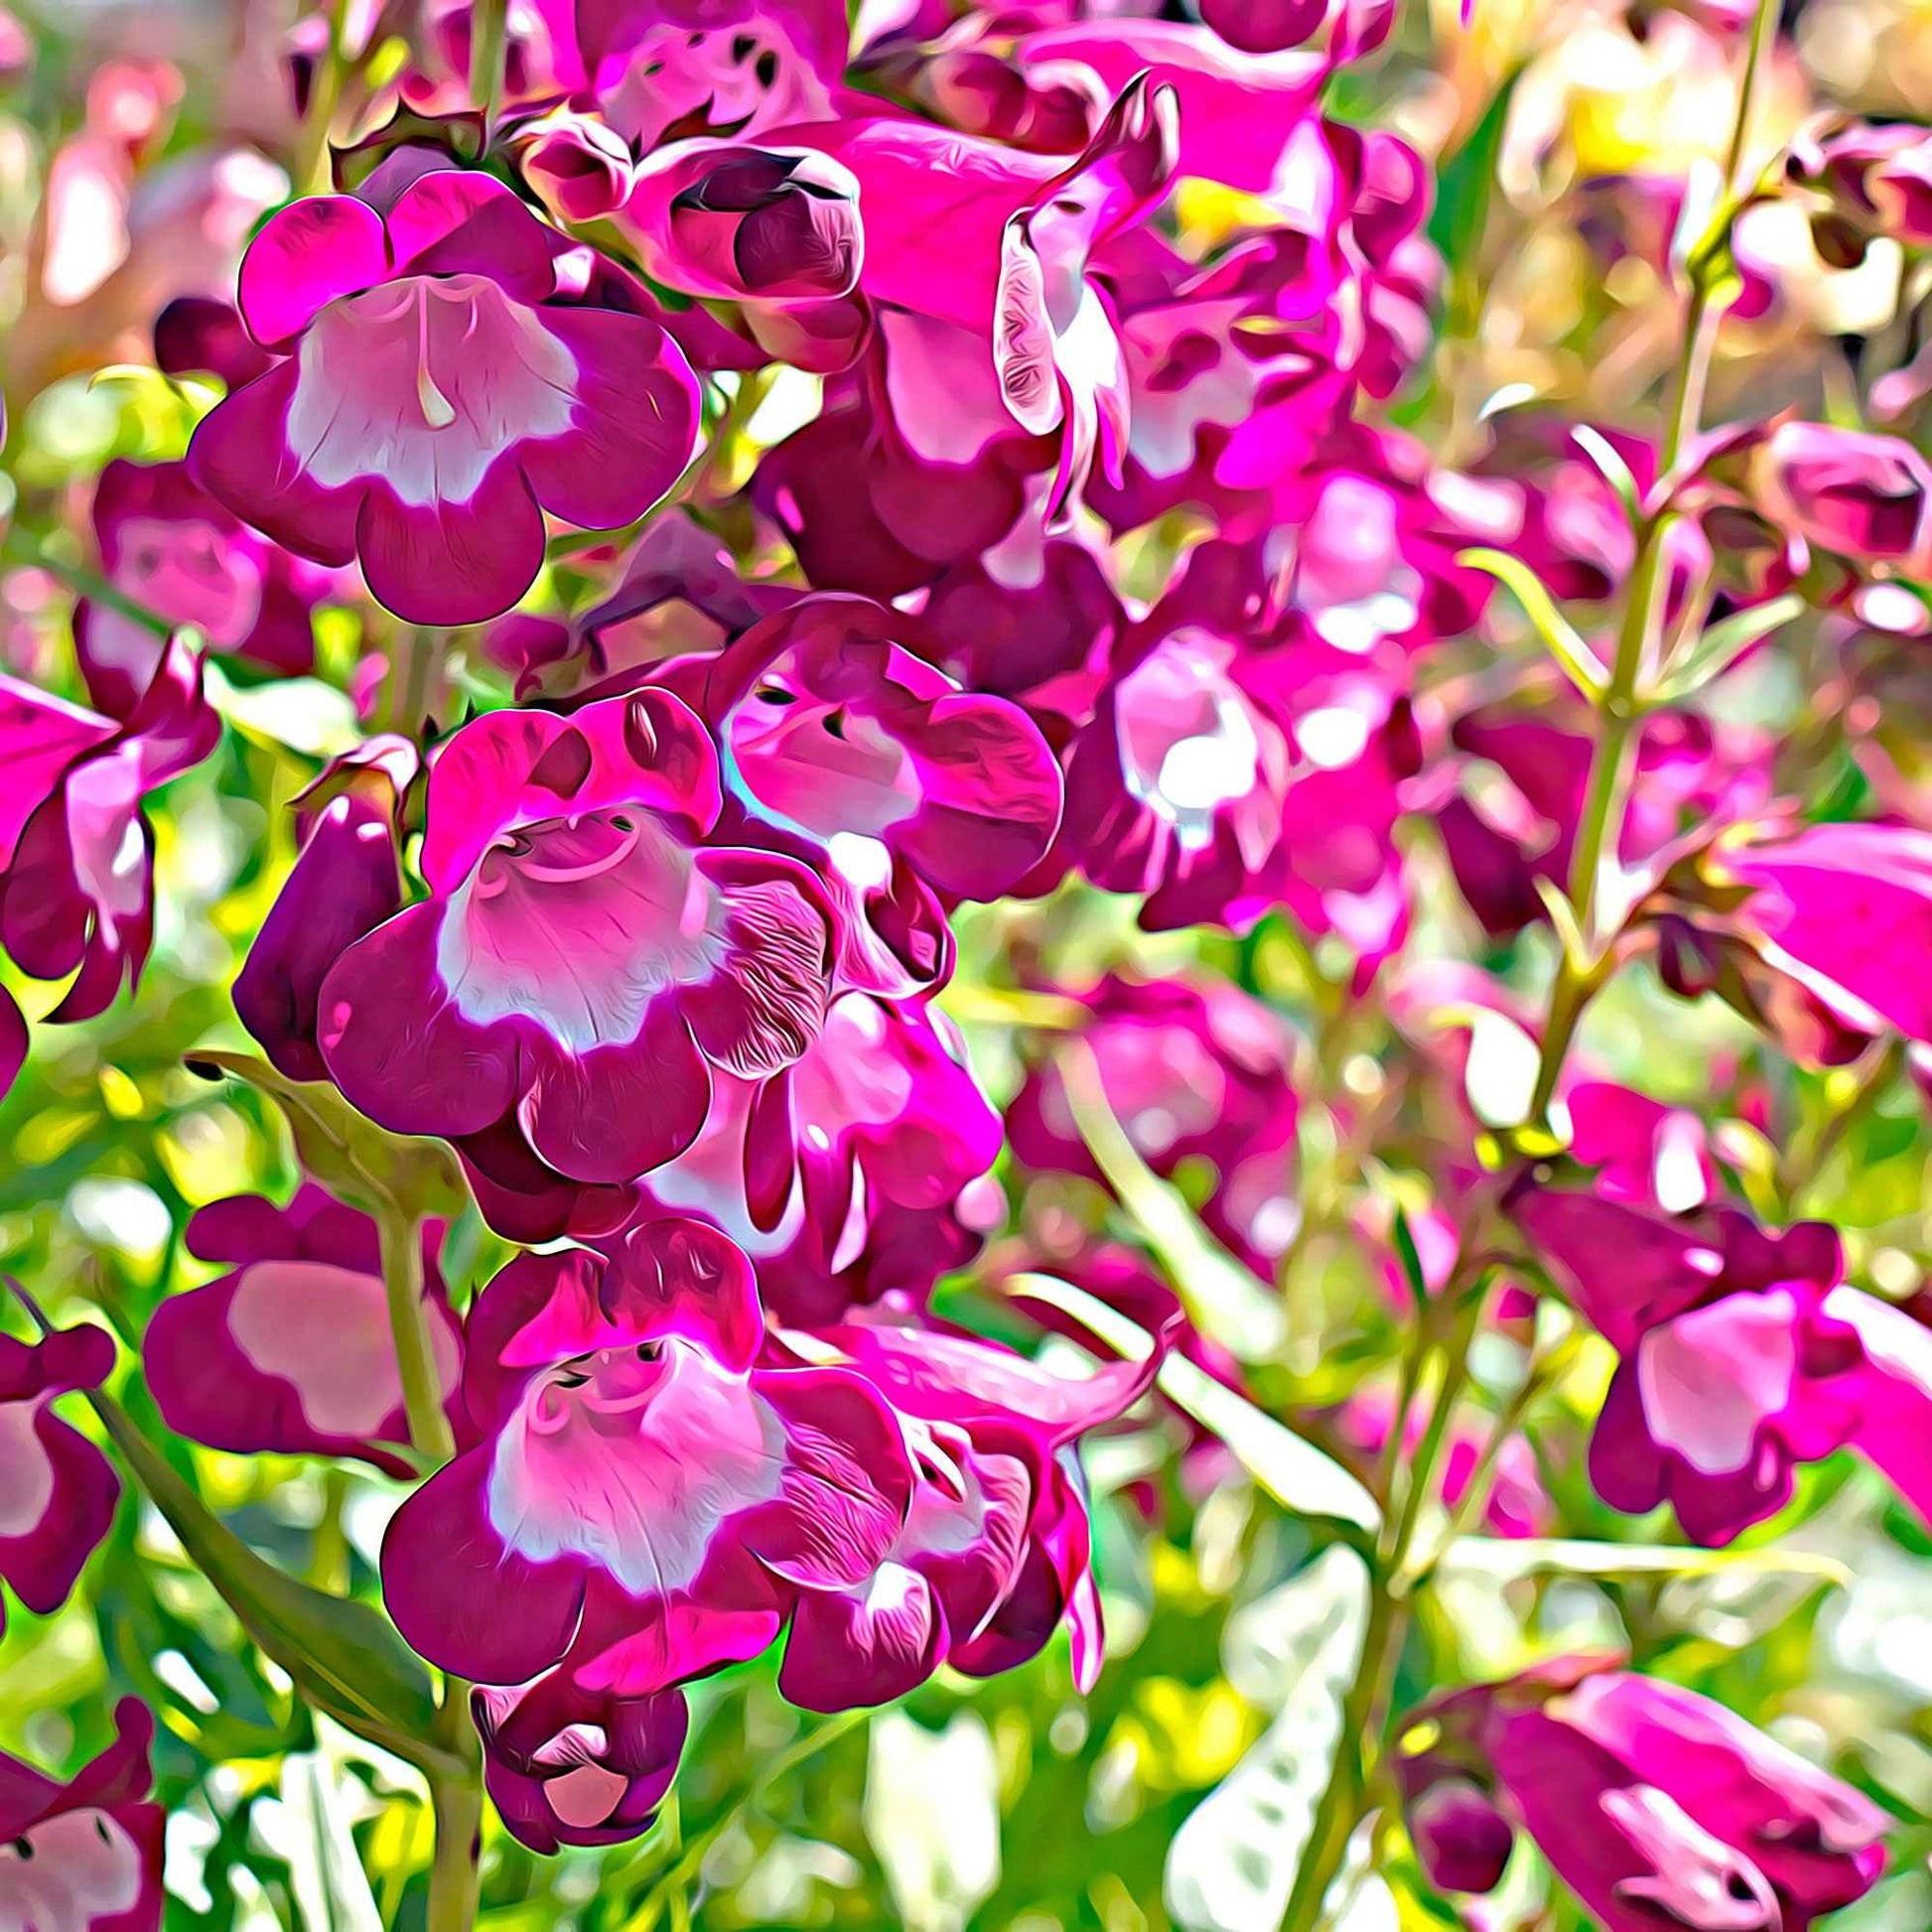 6x Schildpadbloem Penstemon hartwegii roze  - Winterhard - Plant eigenschap